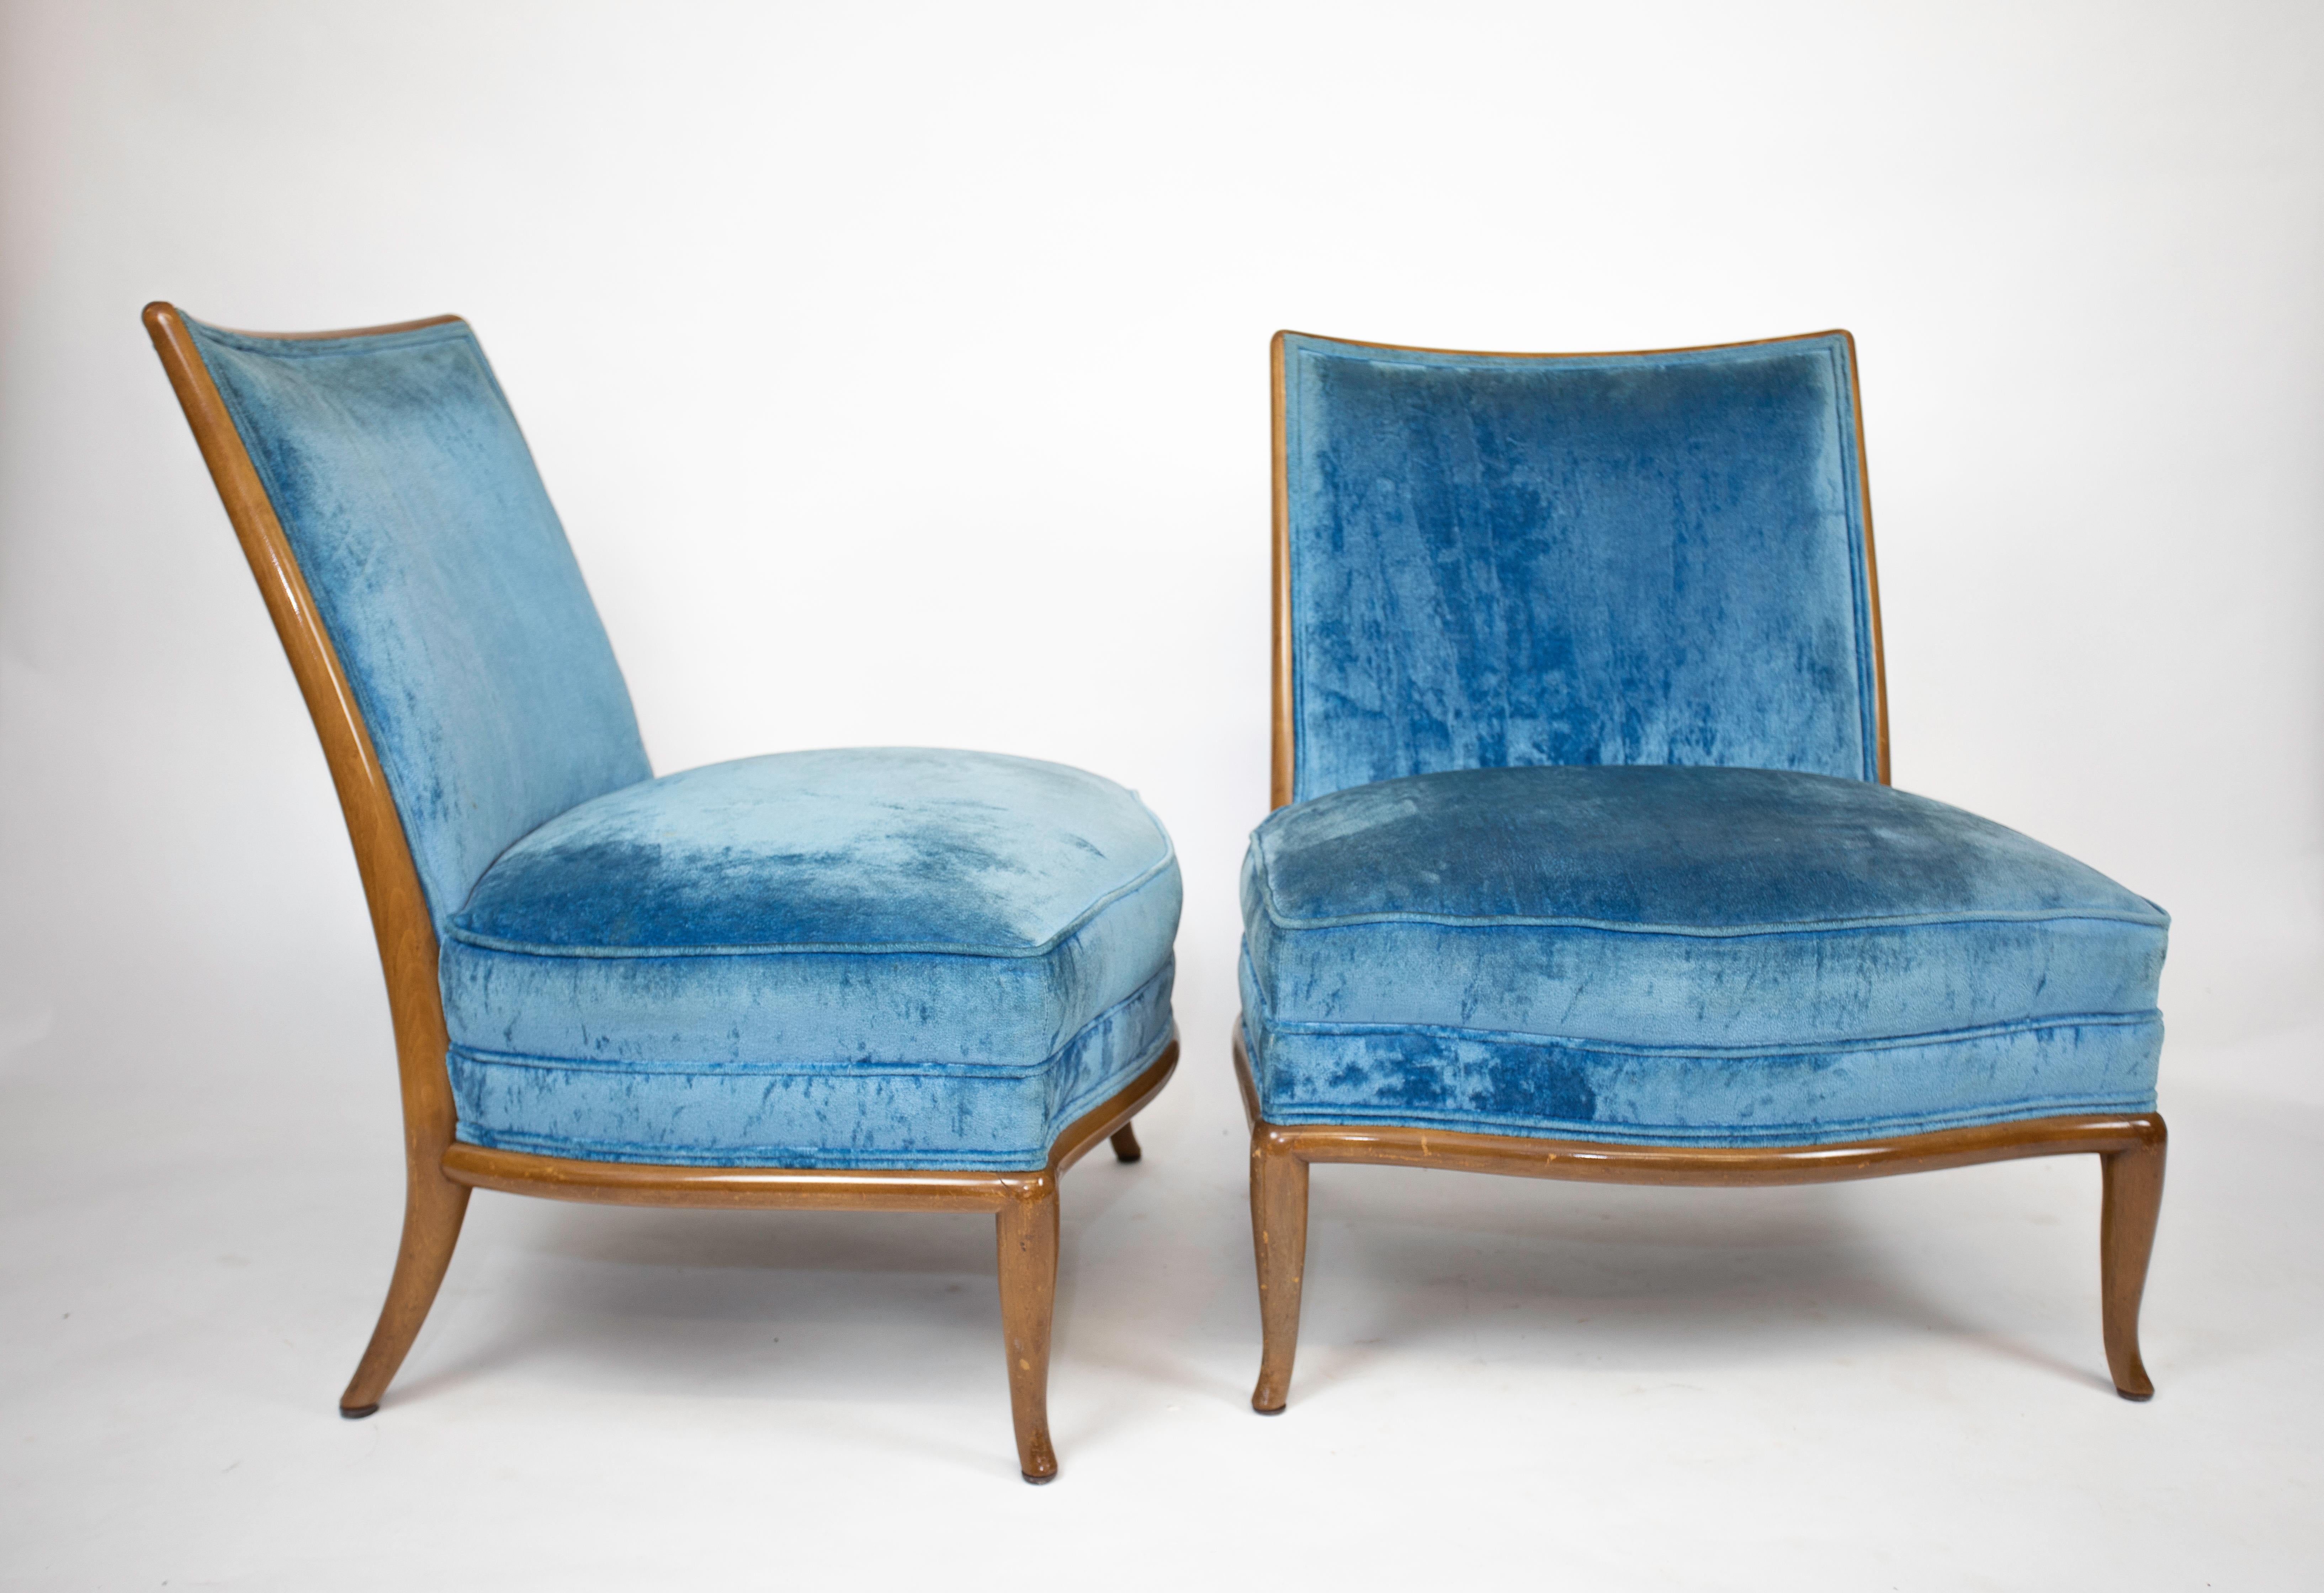 Upholstery Robsjohn, Gibbings Slipper Chairs For Sale